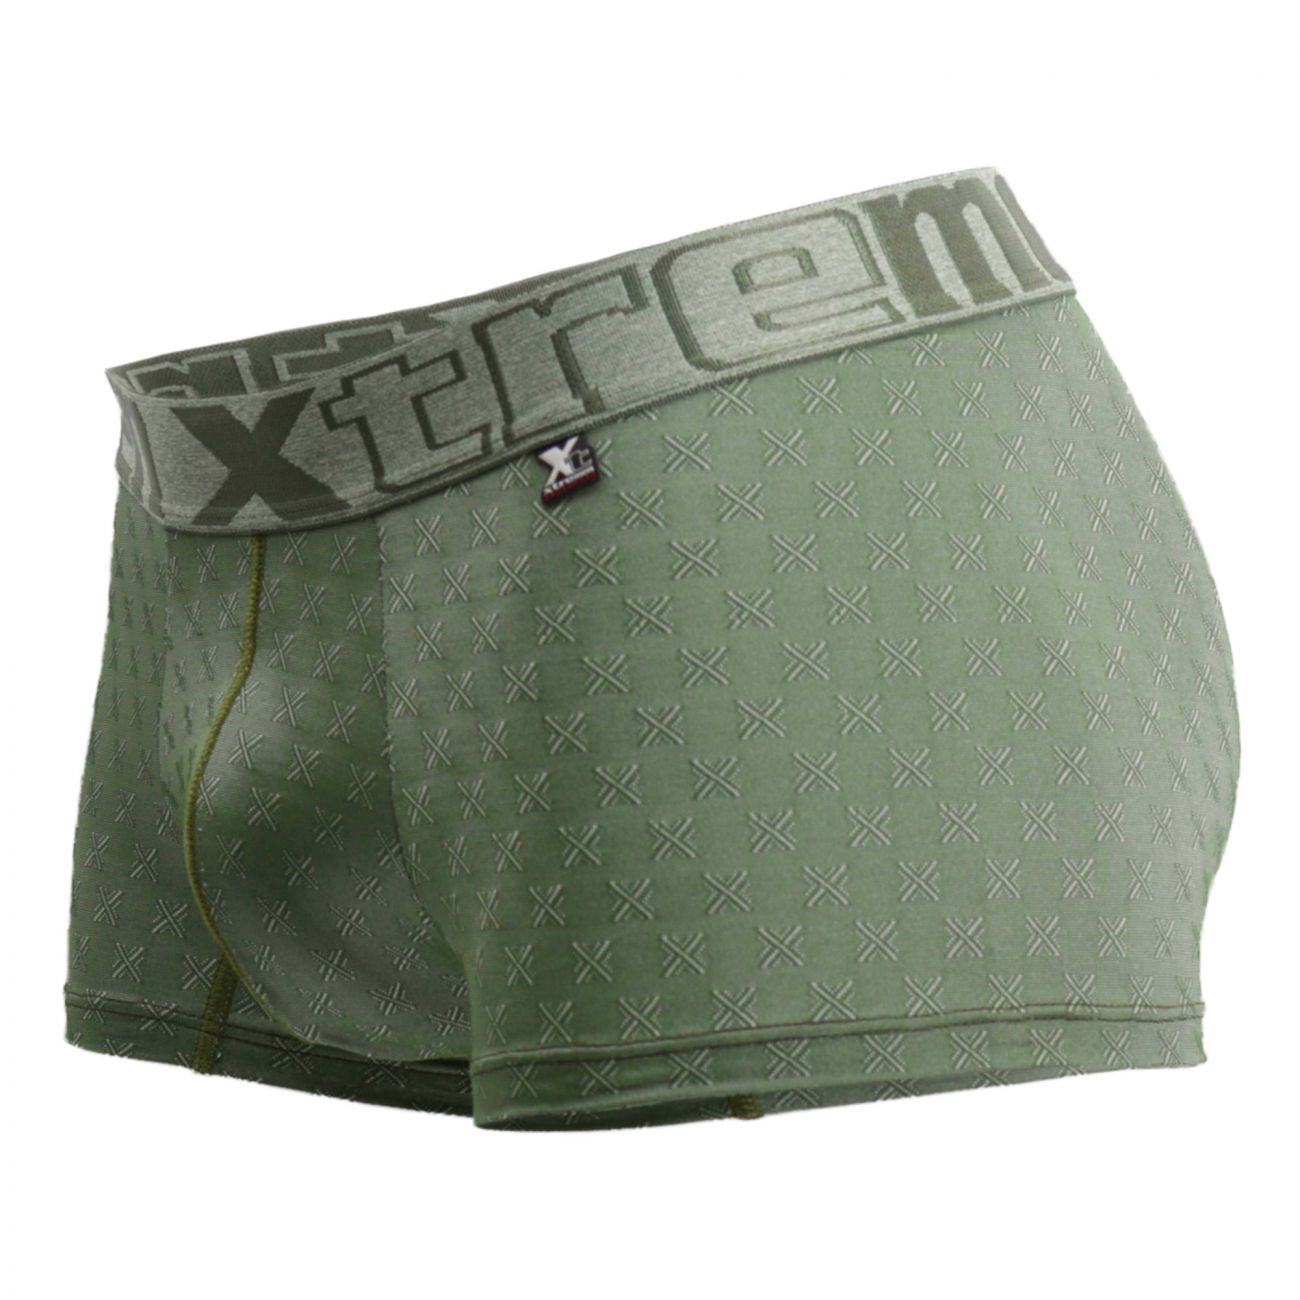 Xtremen 51442C Jacquard -X- Boxer Briefs